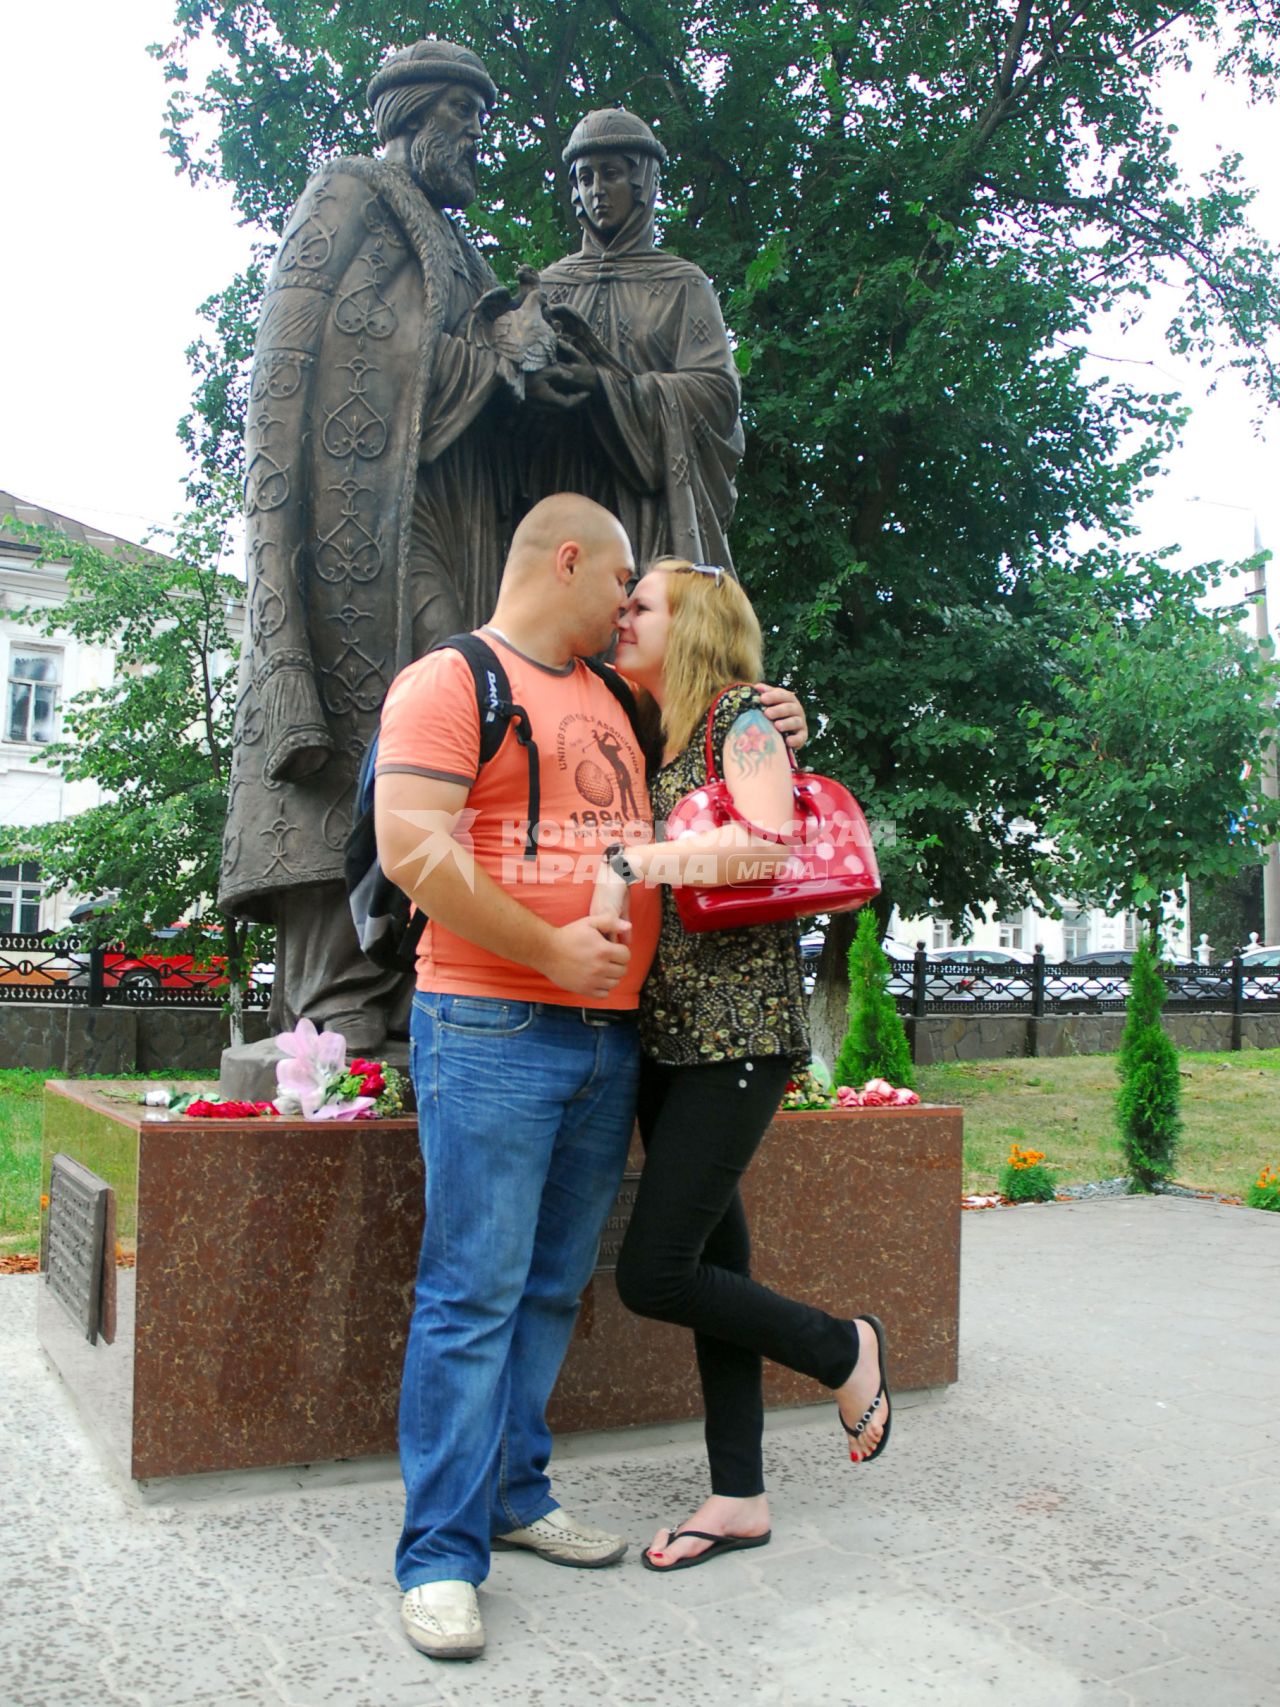 В Туле появились свои святые Петр и Феврония. 15 июля состоялось торжественное открытие скульптурной композиции в Кремлевском сквере. На снимке: Молодая пара проявляет друг к другу теплые чувства.